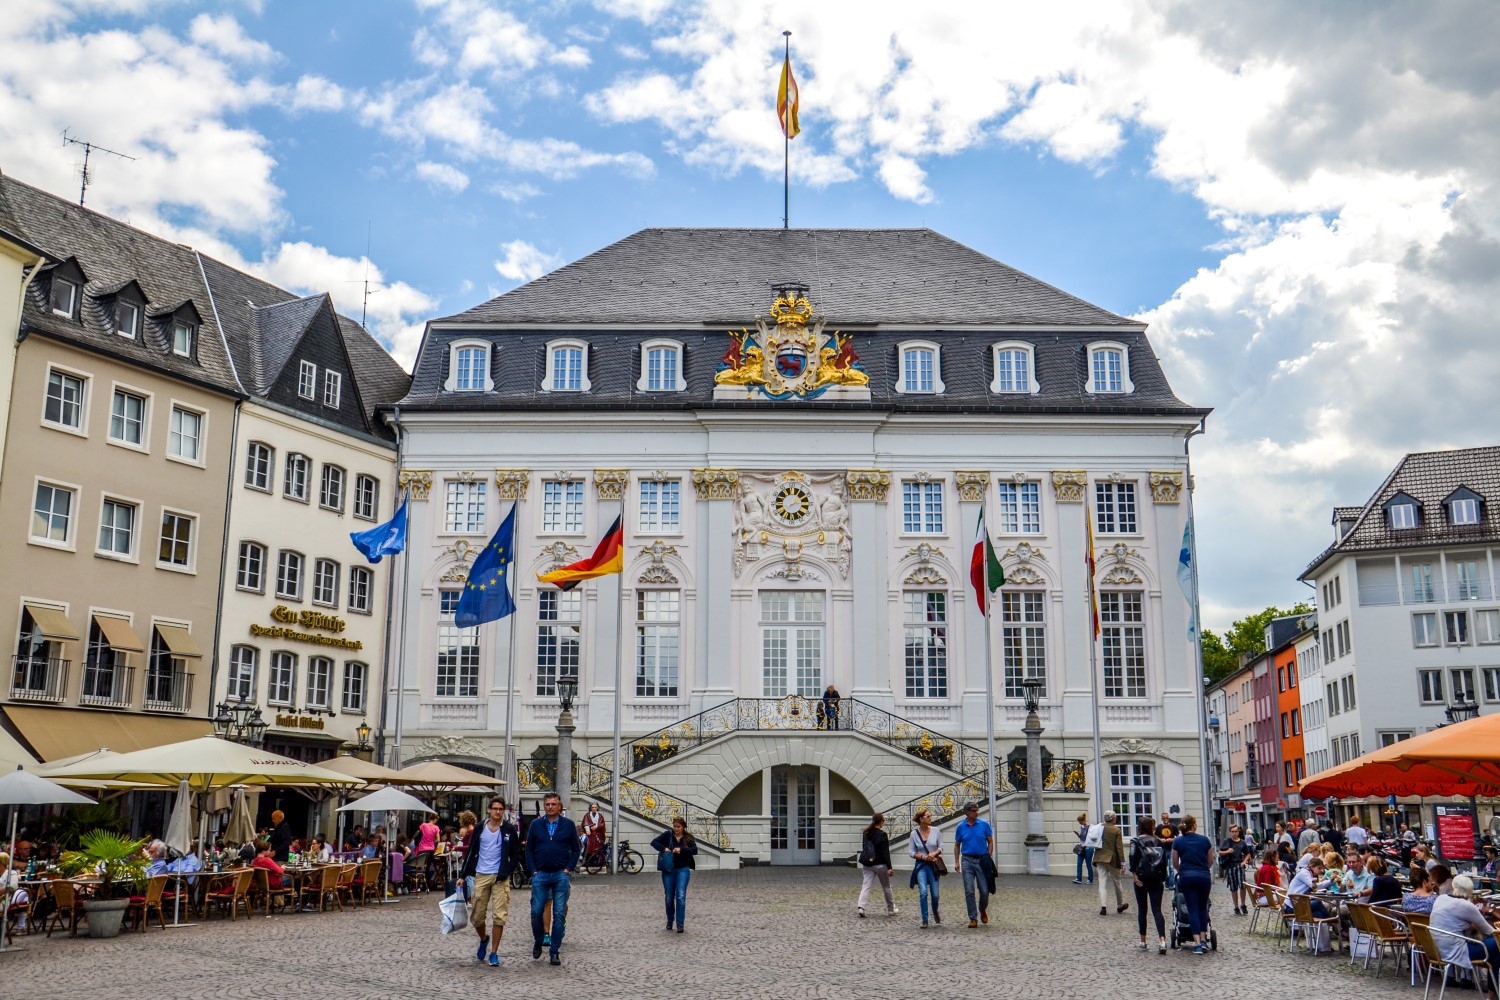 Bonn, Niemcy - bele kaj, blog podróżniczy po śląsku